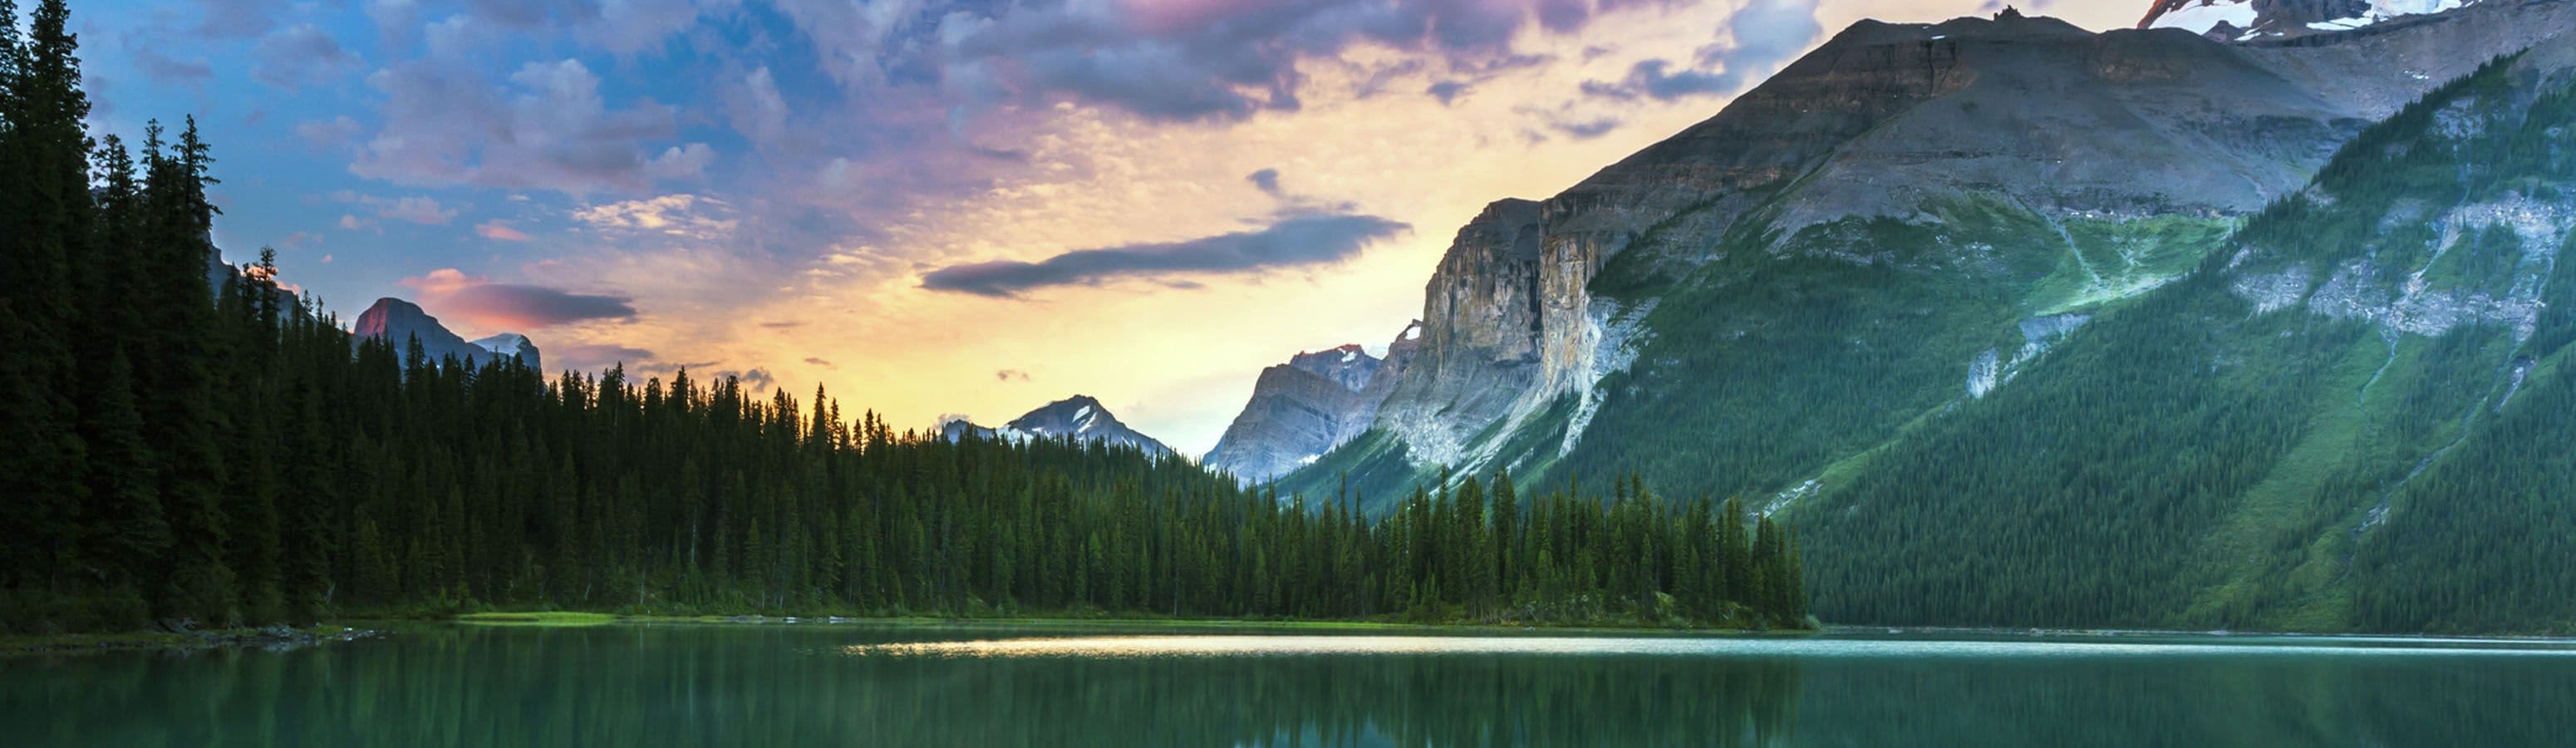 Kanada nabízí volné vstupy do národních parků